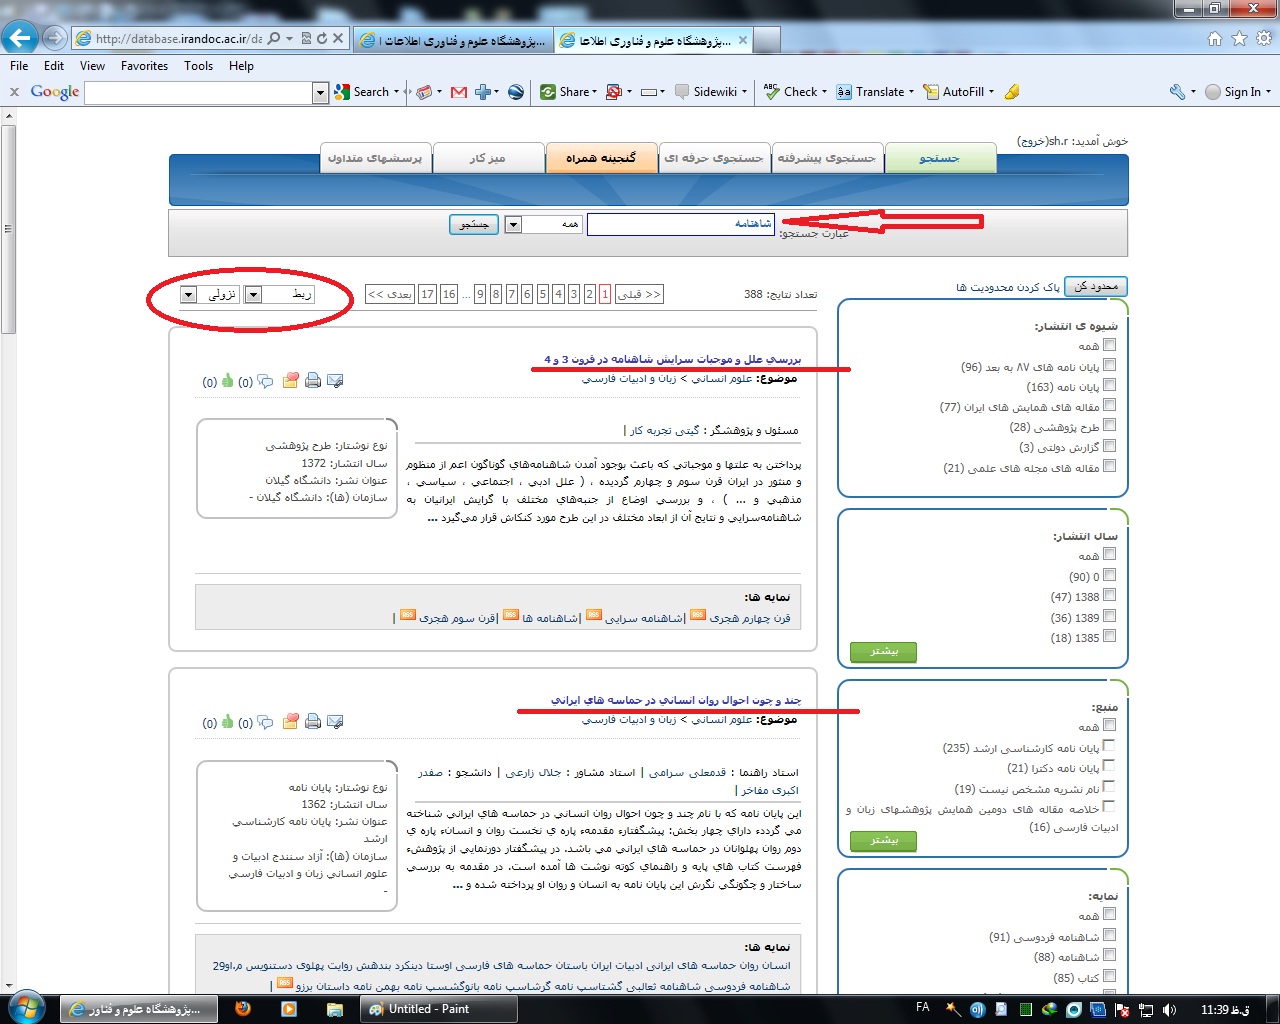 Irandoc_4_ - جستجو پایان نامه ها و مقالات در سایت ایران داک - متا